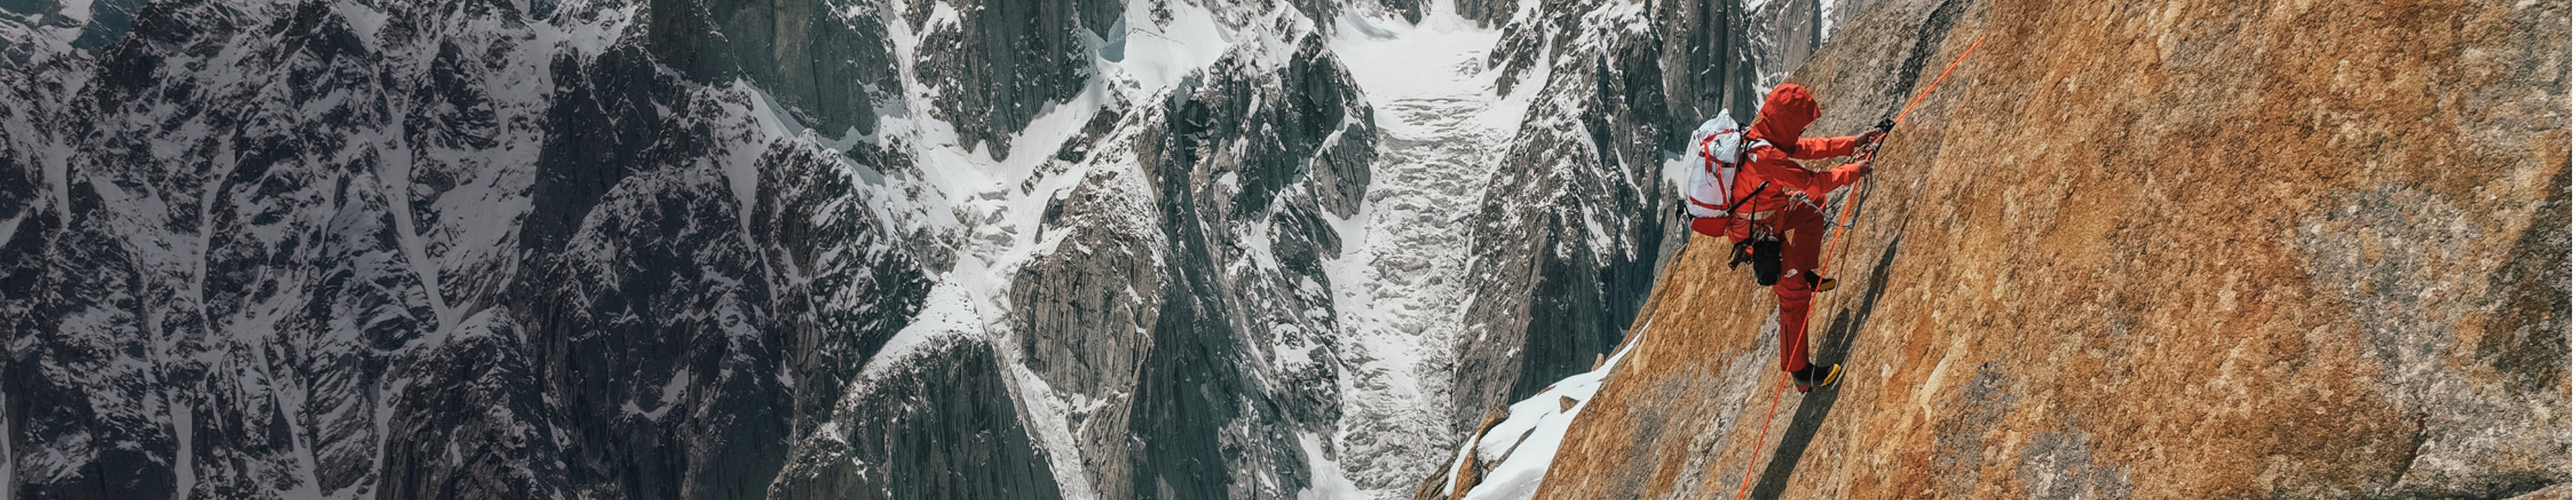 Une femme en tenue Summit Series de The North Face fait de l’escalade hivernale.